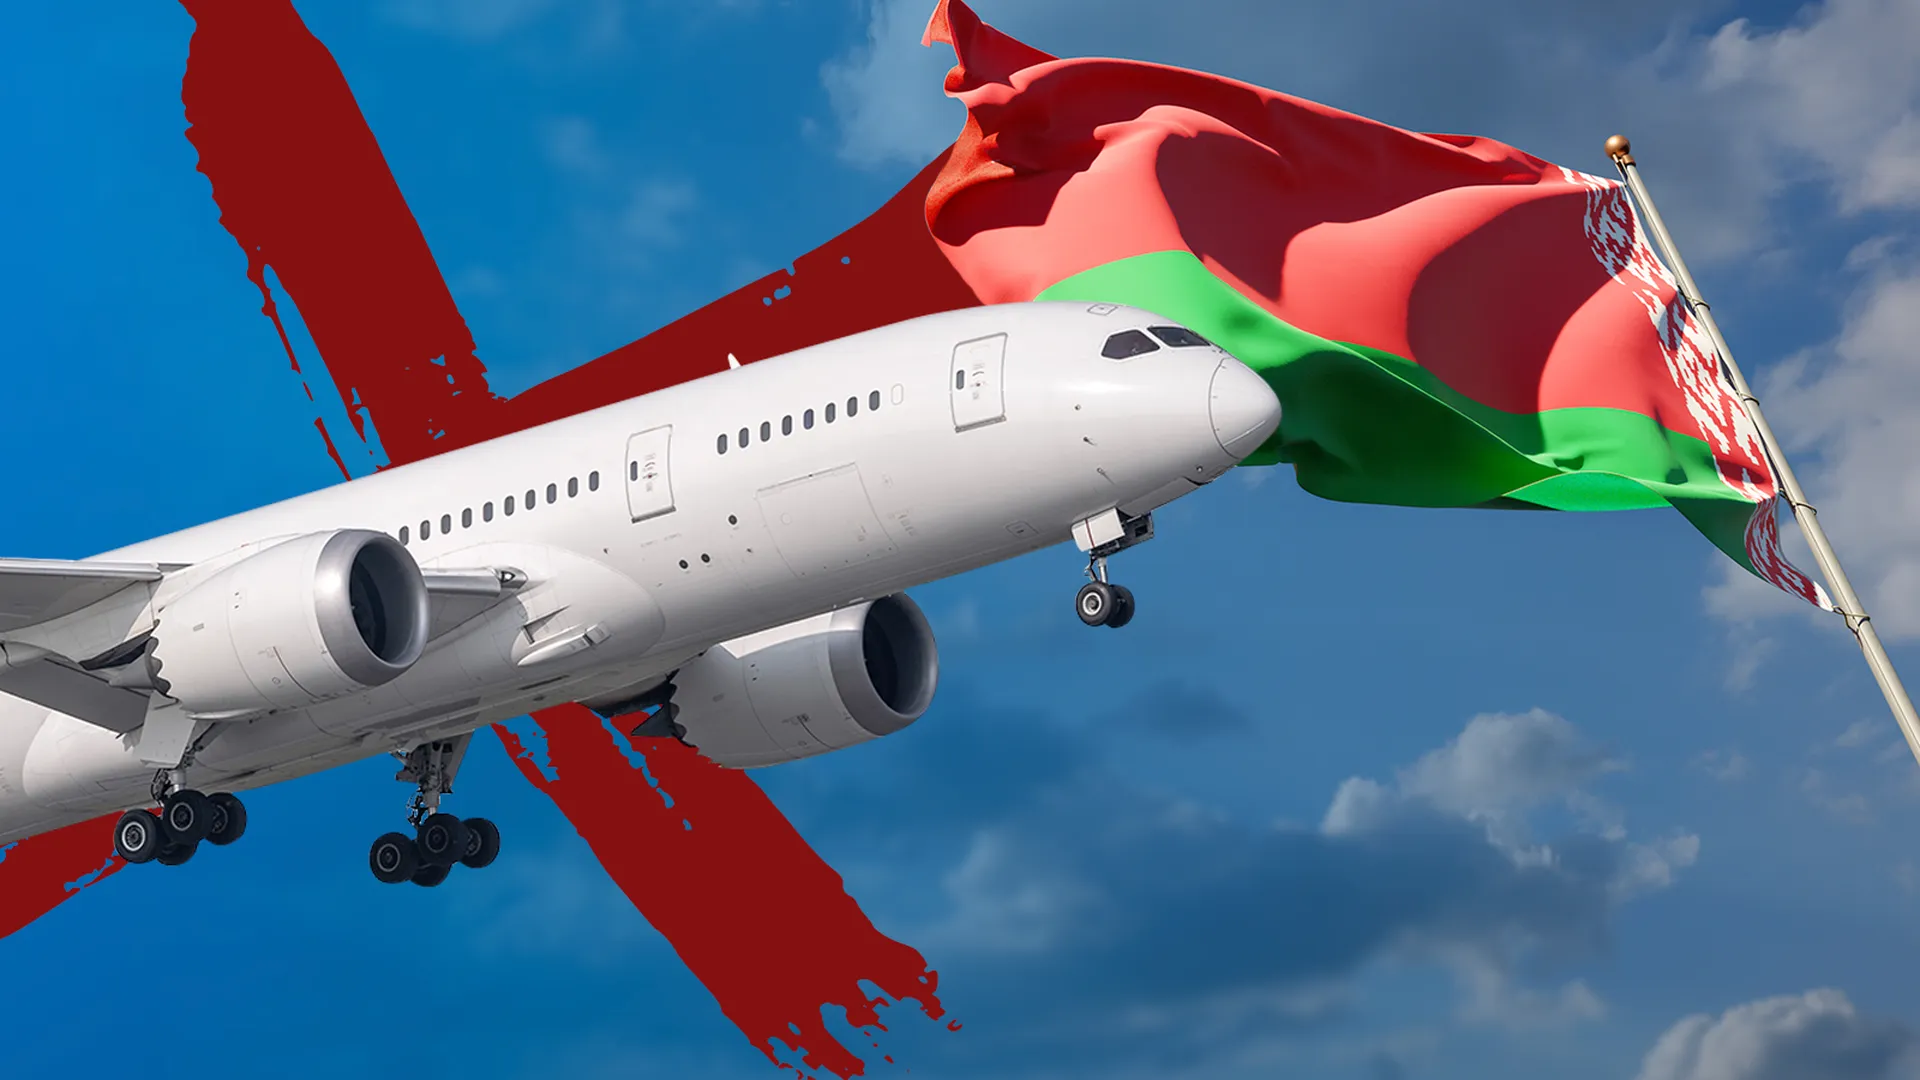 Самолет Белавиа на фоне неба и флага Белоруссии